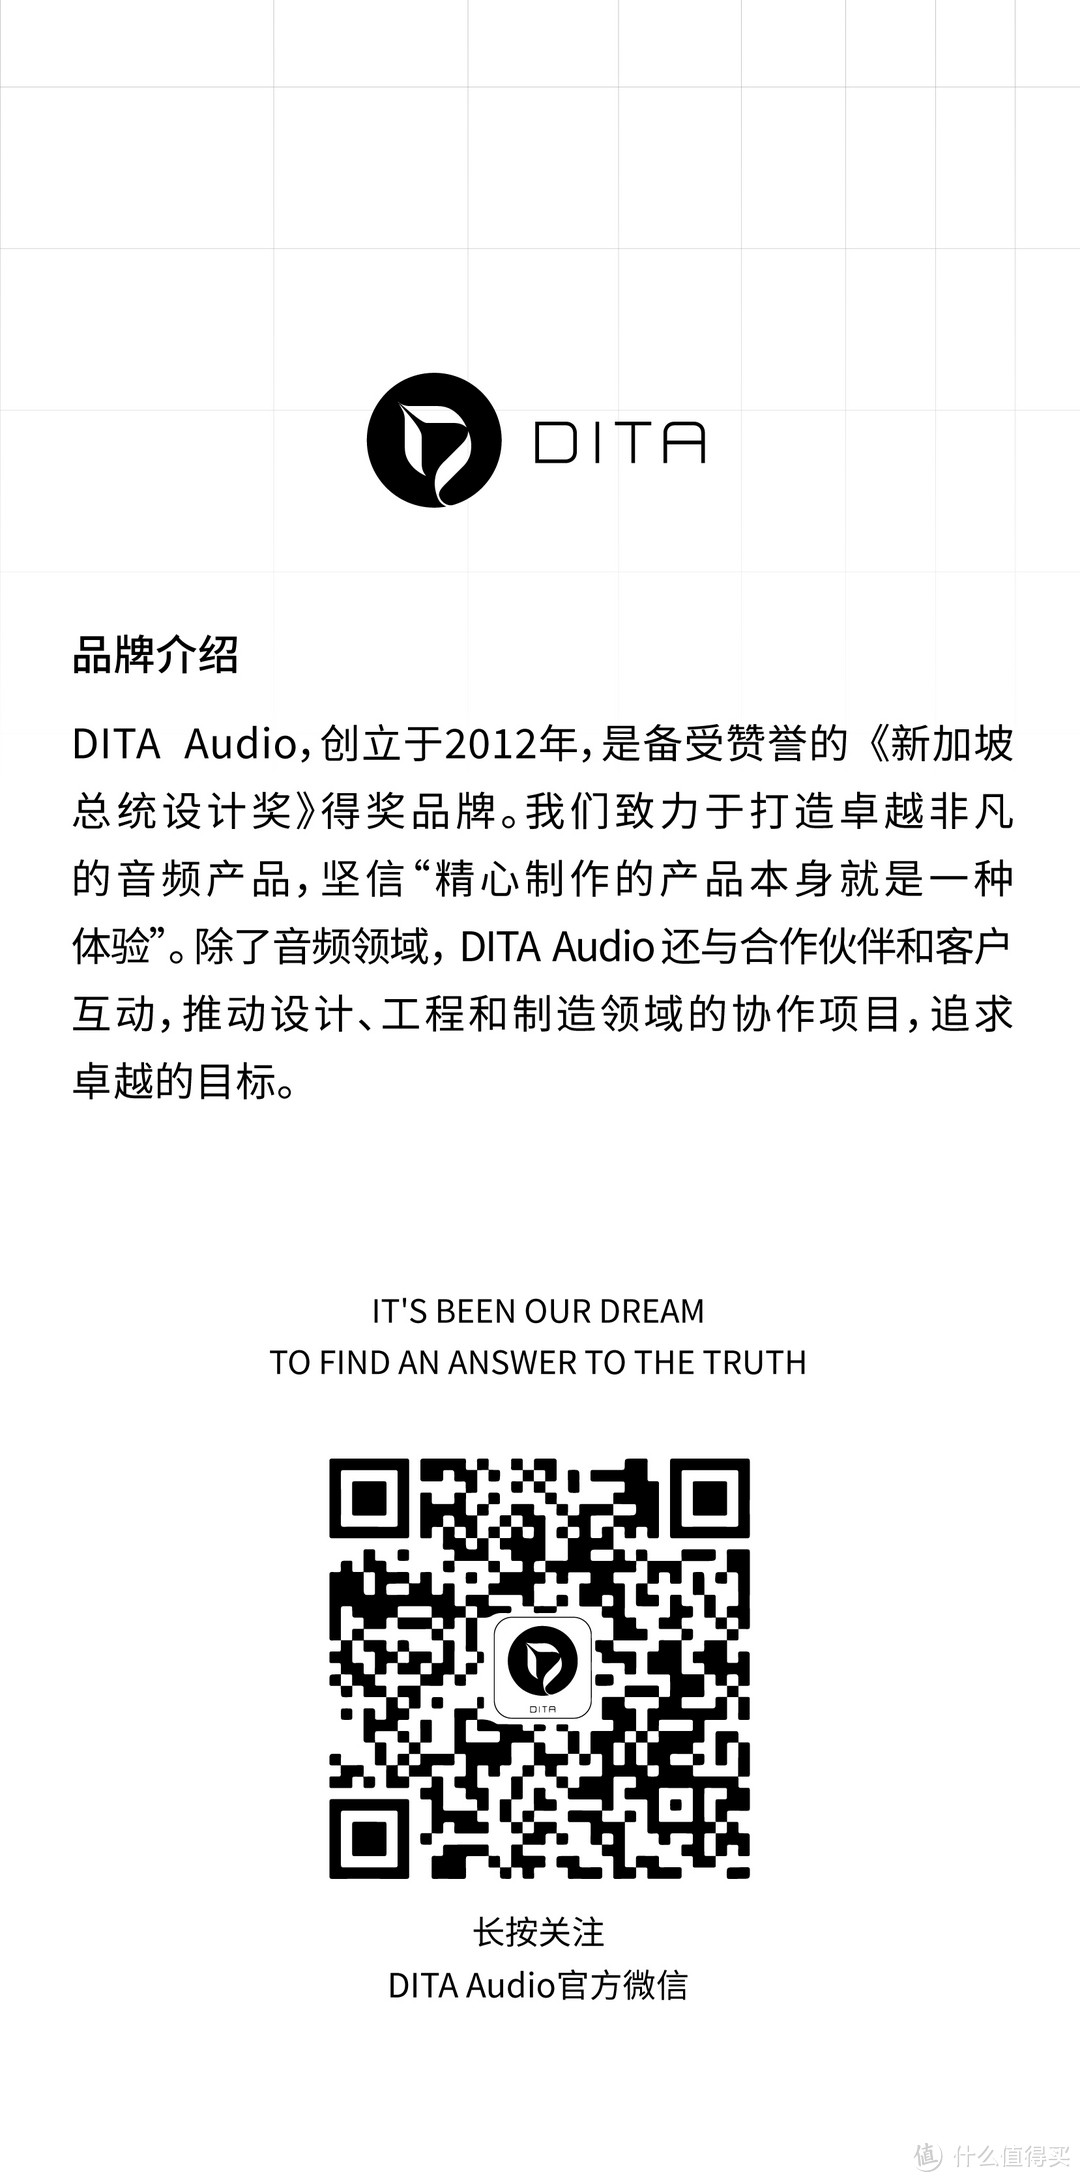 【行业资讯】DITA新品耳机PROJECT M正式上市